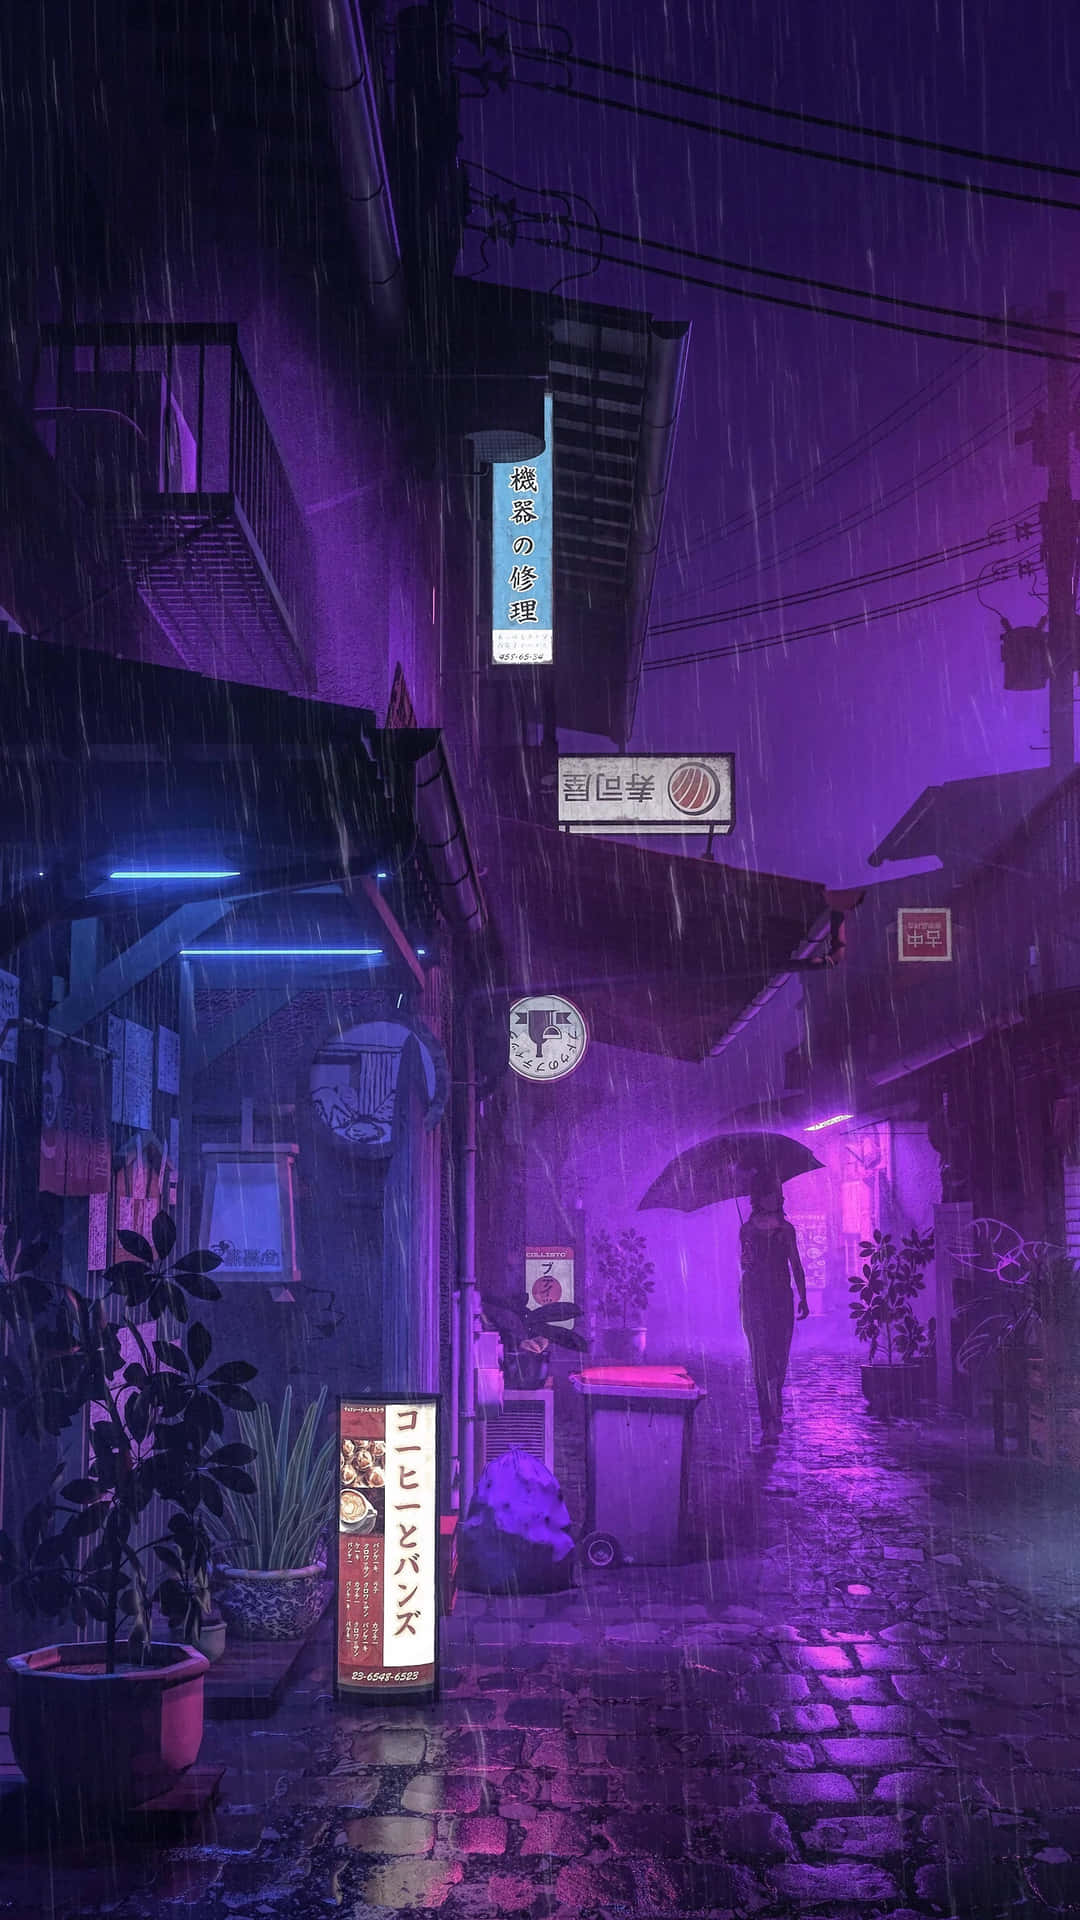 En regnfuld nat scene med en neon skilt og paraply Wallpaper